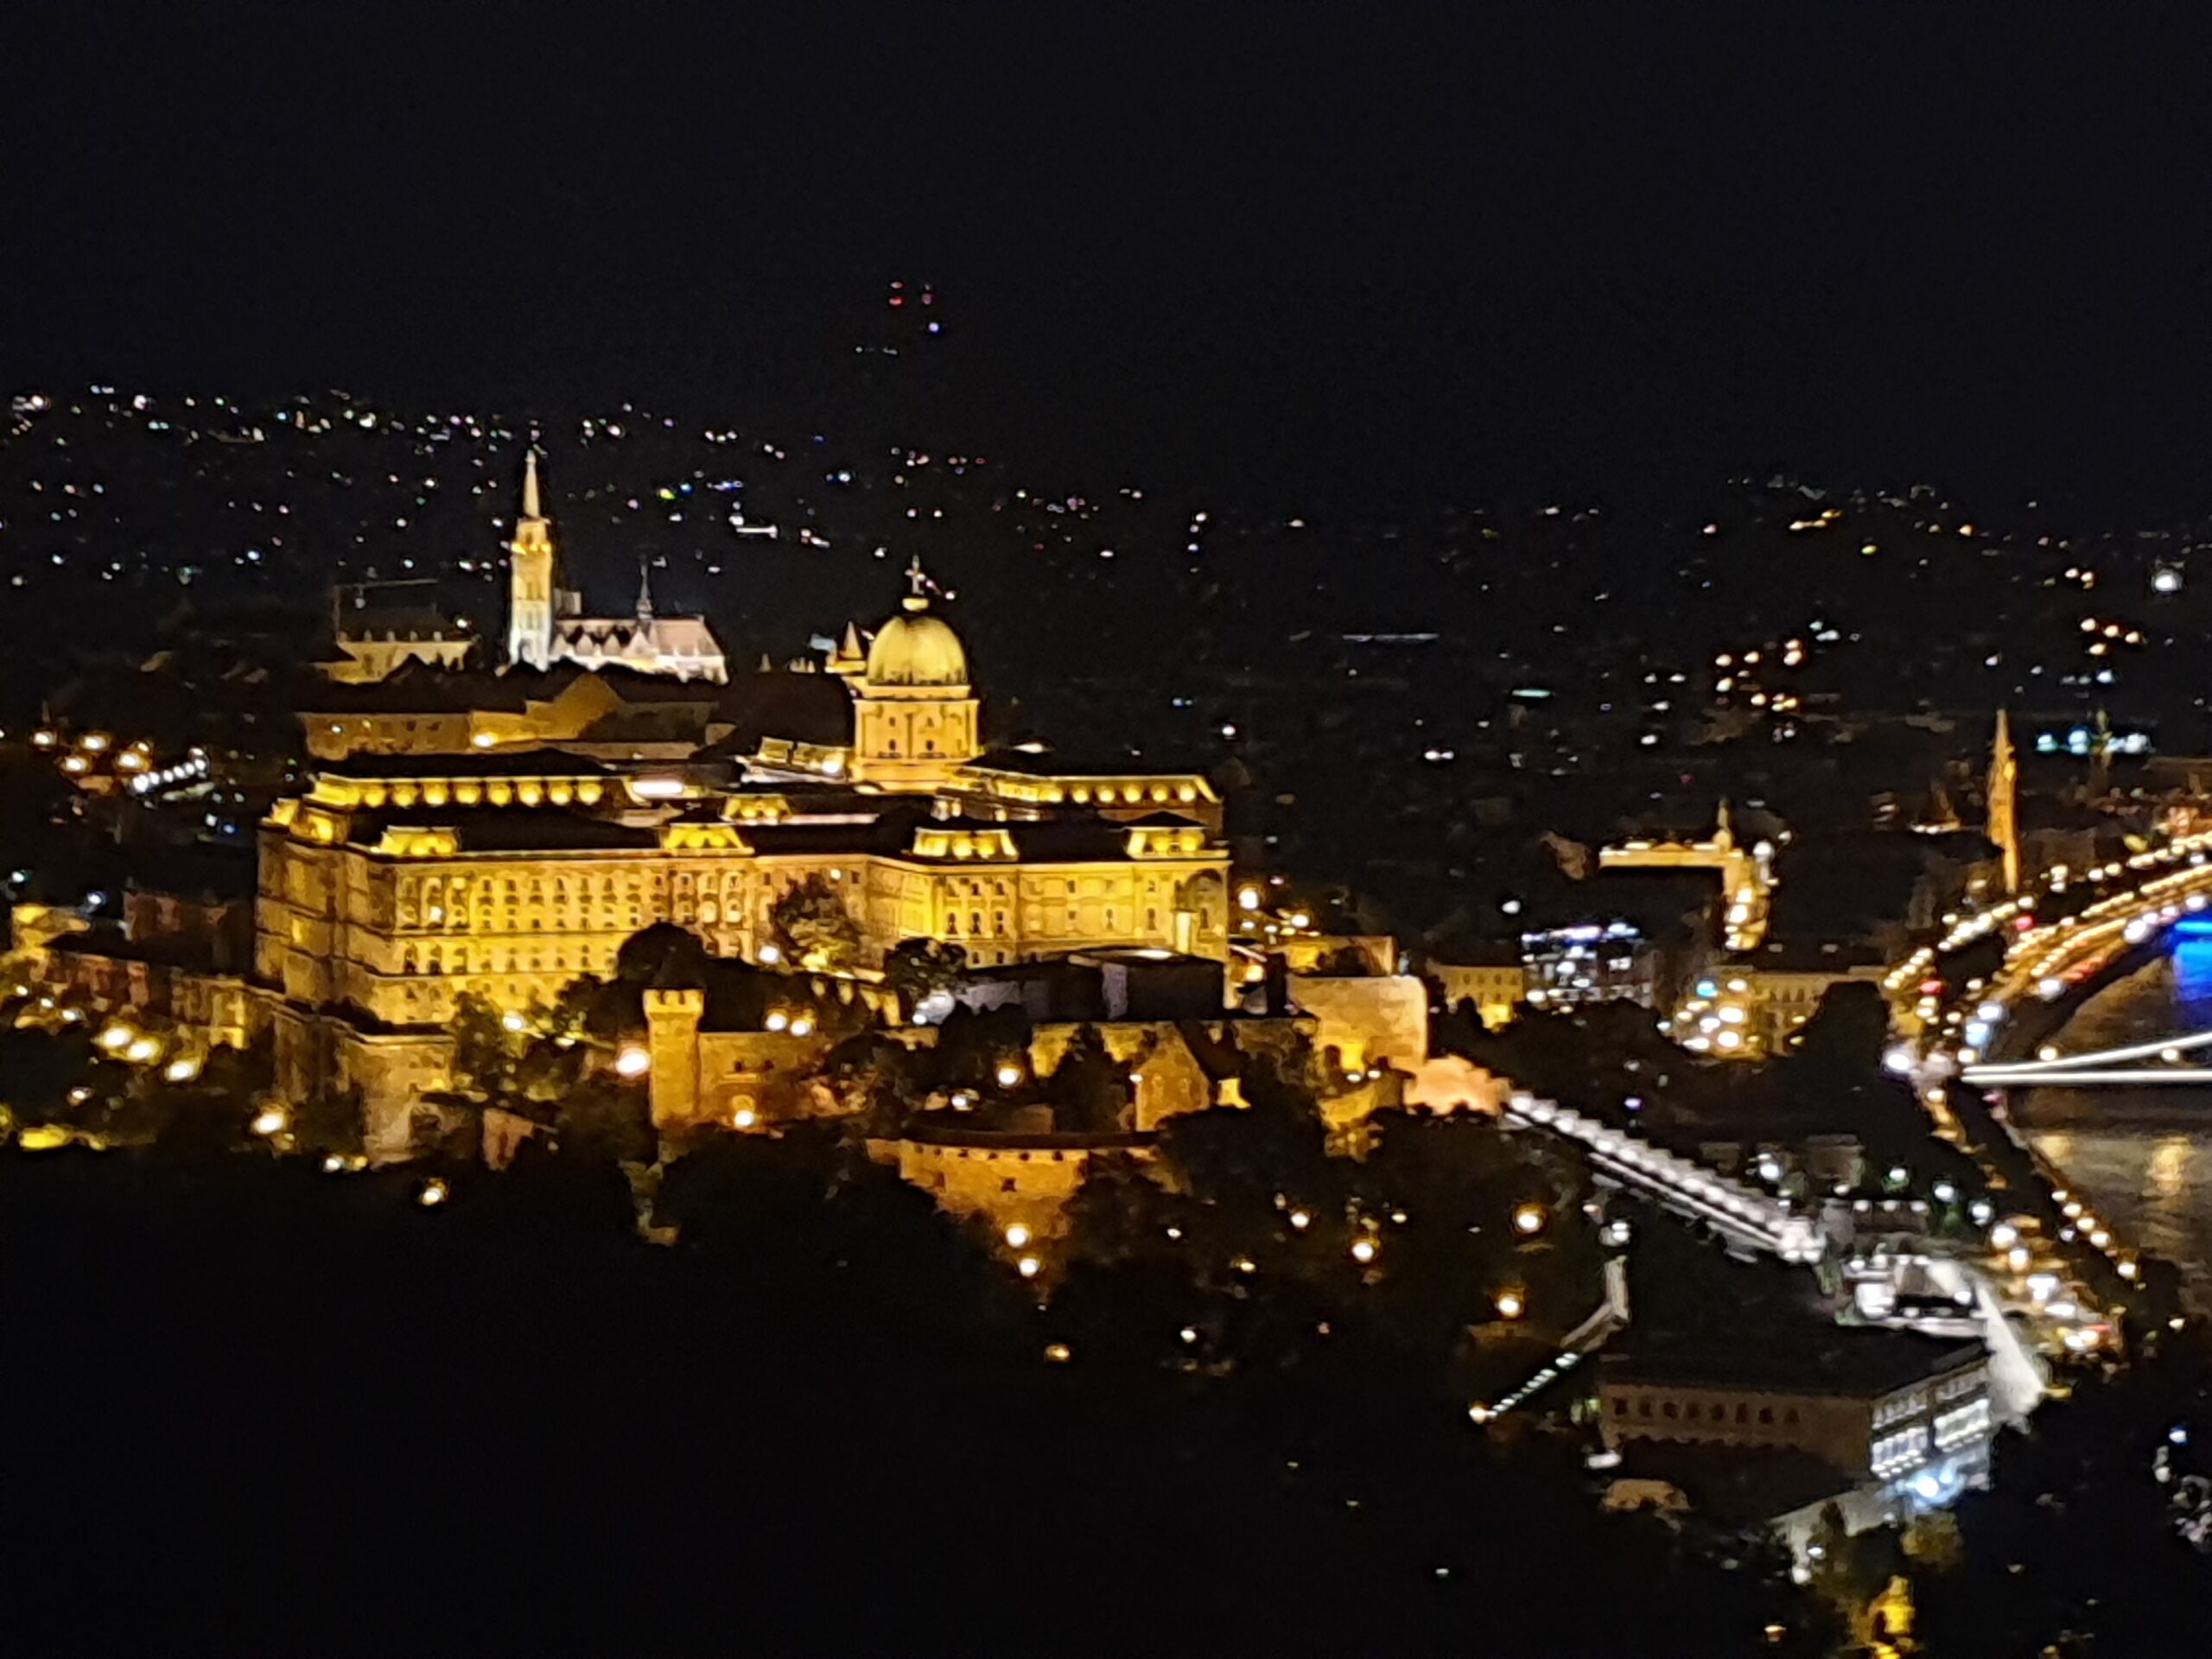 Wzgórze Zamkowe nocą uwiecznione podczas krótkiej wycieczki do Budapesztu na weekend